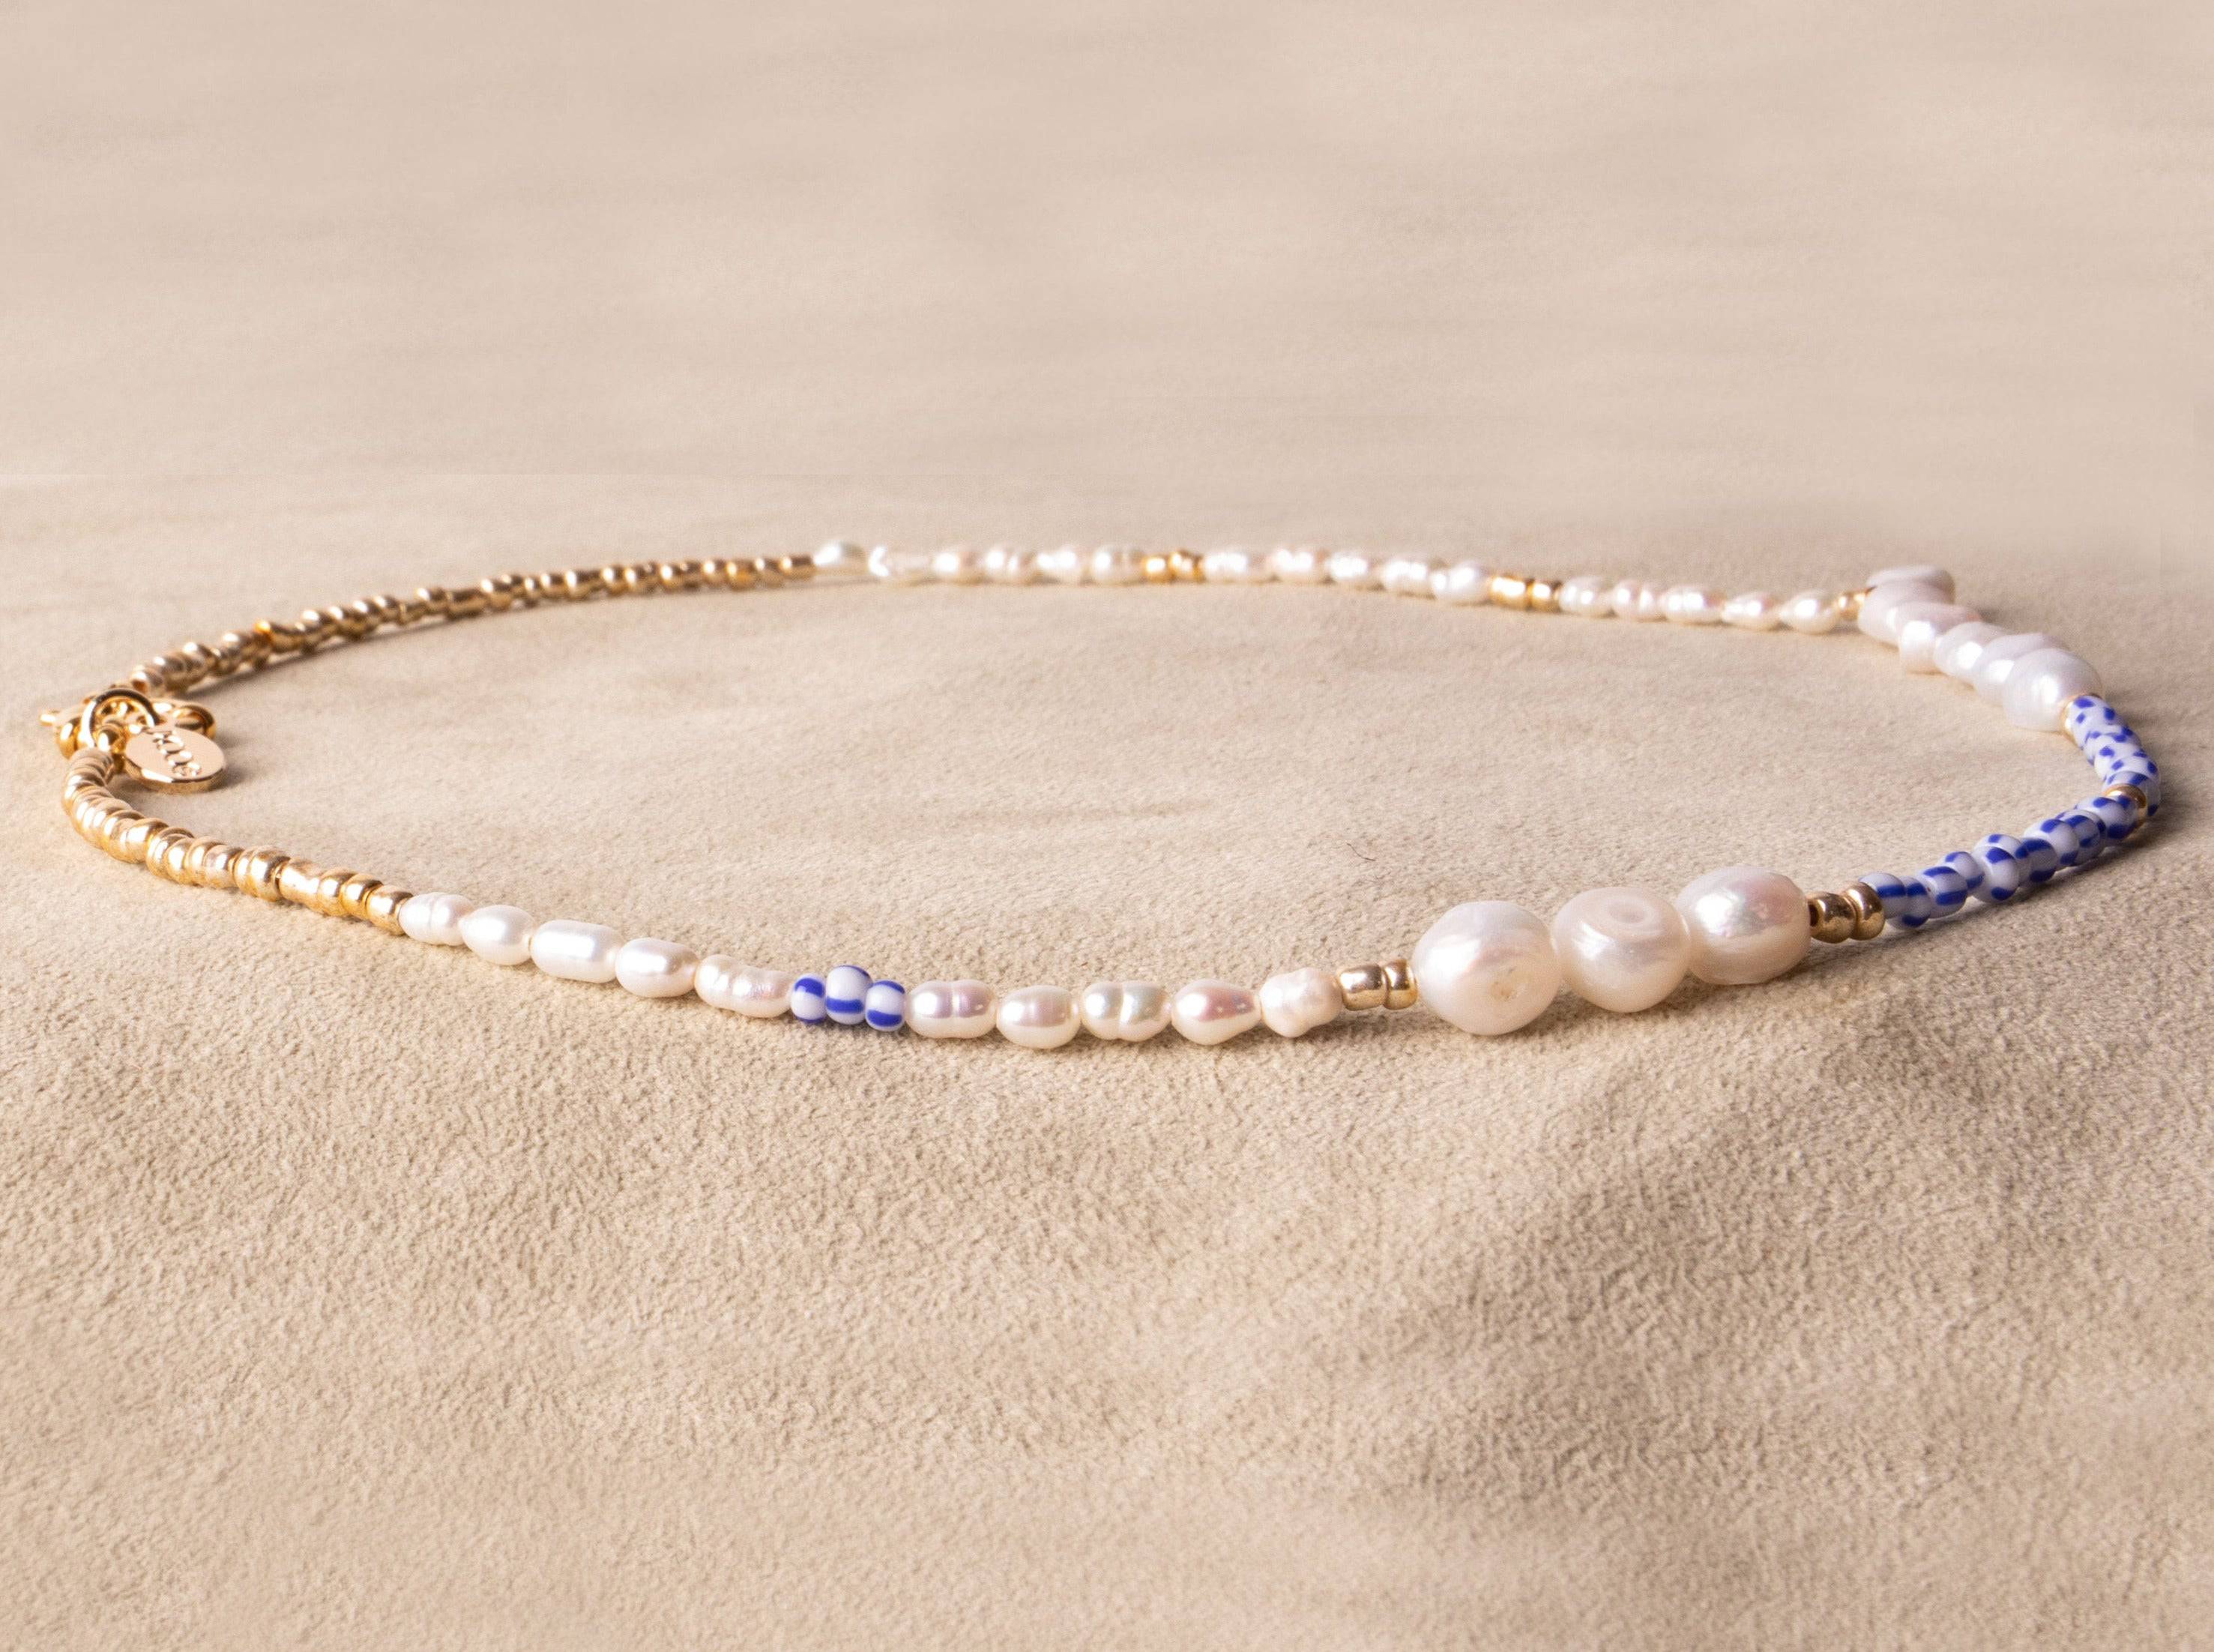 BLUE WAVE - Handgemachte verspielte Perlenkette - Kette Perlen blau gold weiß vergoldet - NooeBerlin